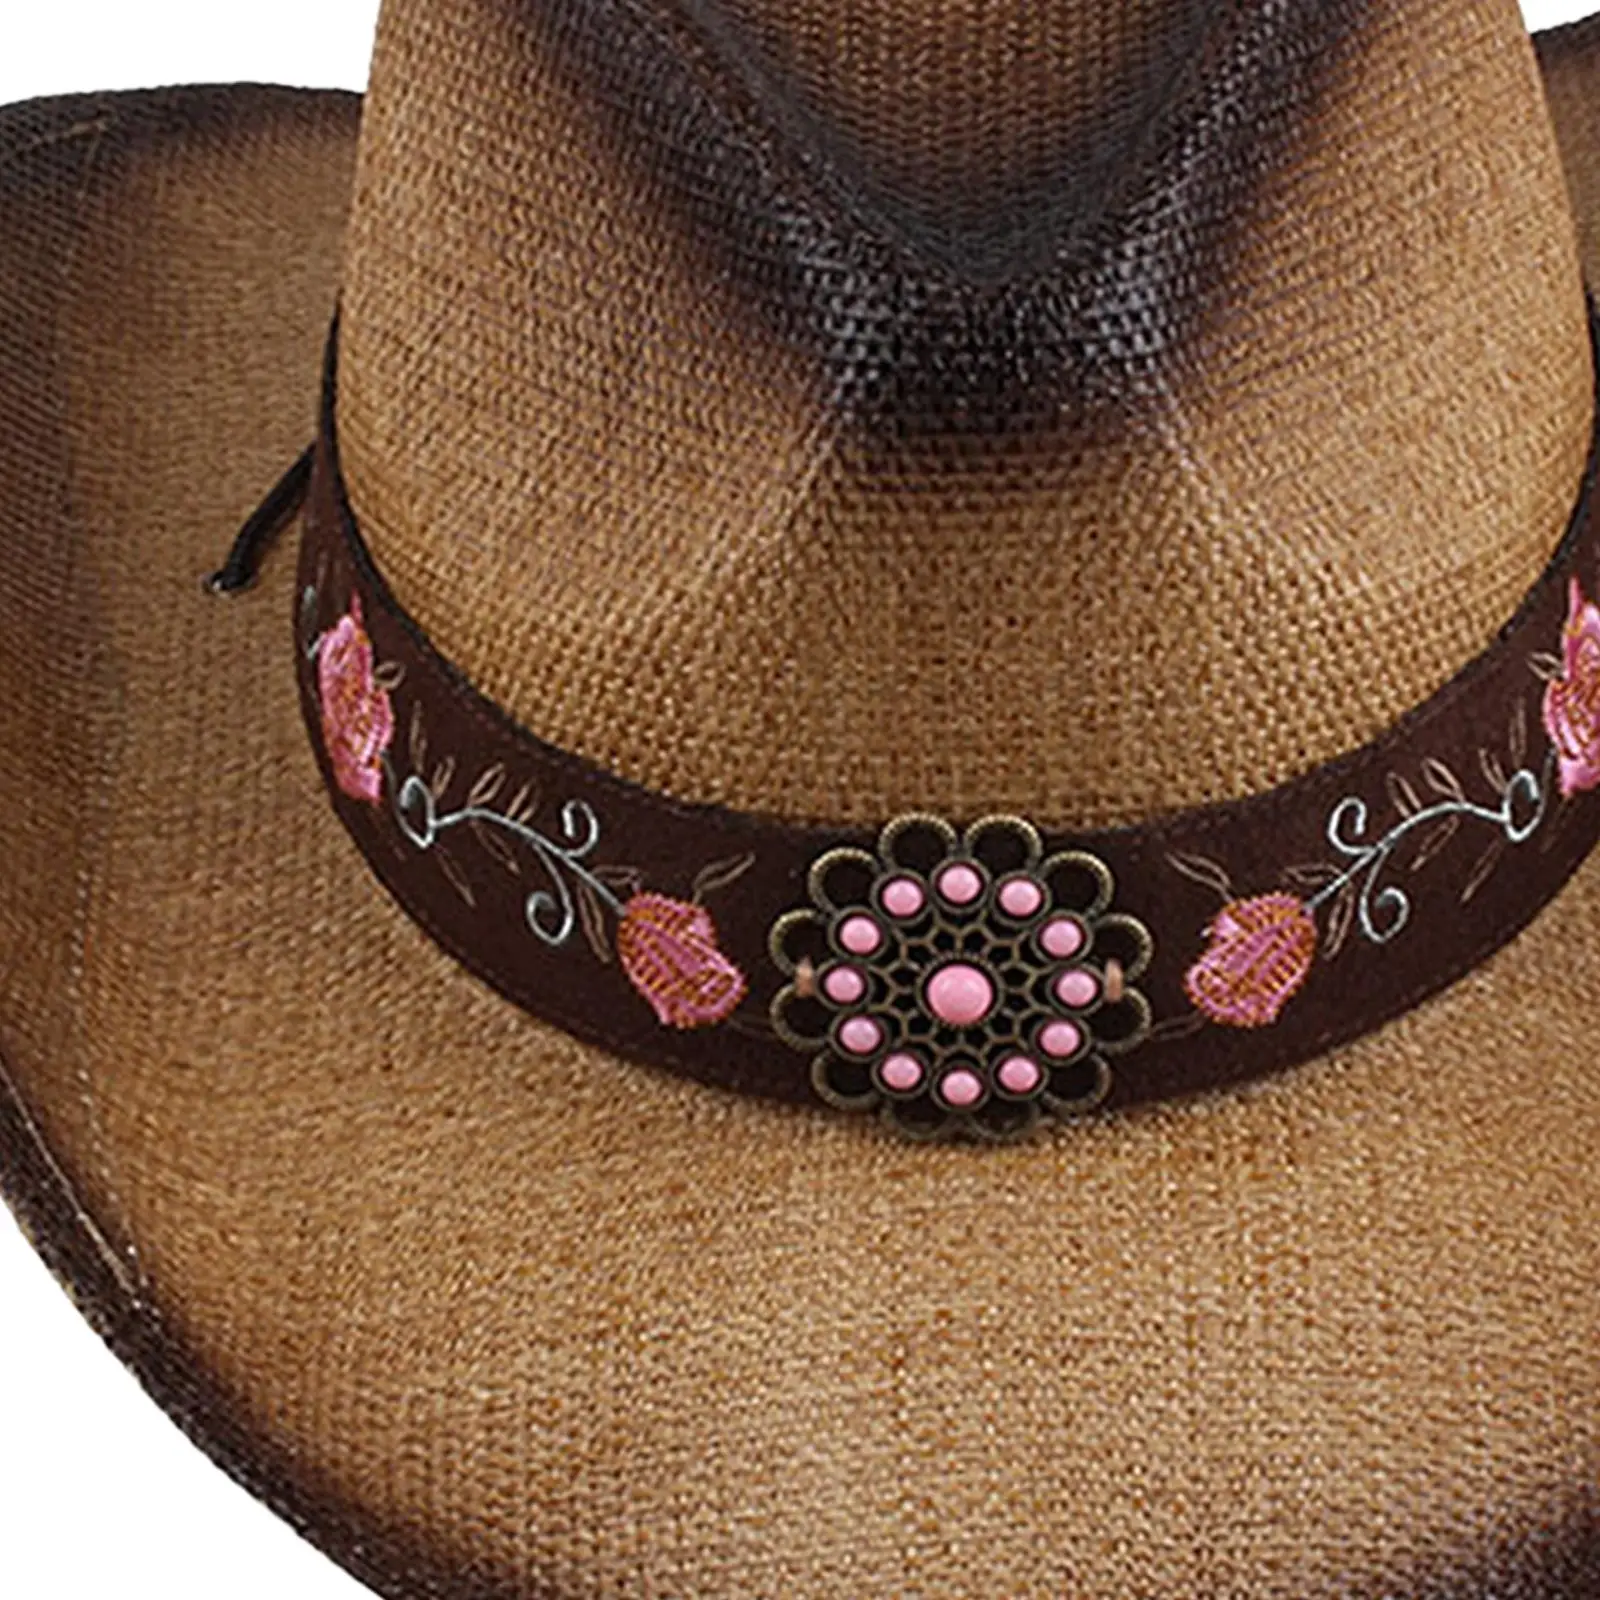 

Западная ковбойская шляпа, костюм, соломенная Повседневная джазовая шляпа, шляпы, шляпы от солнца, кепка Cowgirl для пеших прогулок, наряд, для взрослых, для вечеринок, маскарадный костюм